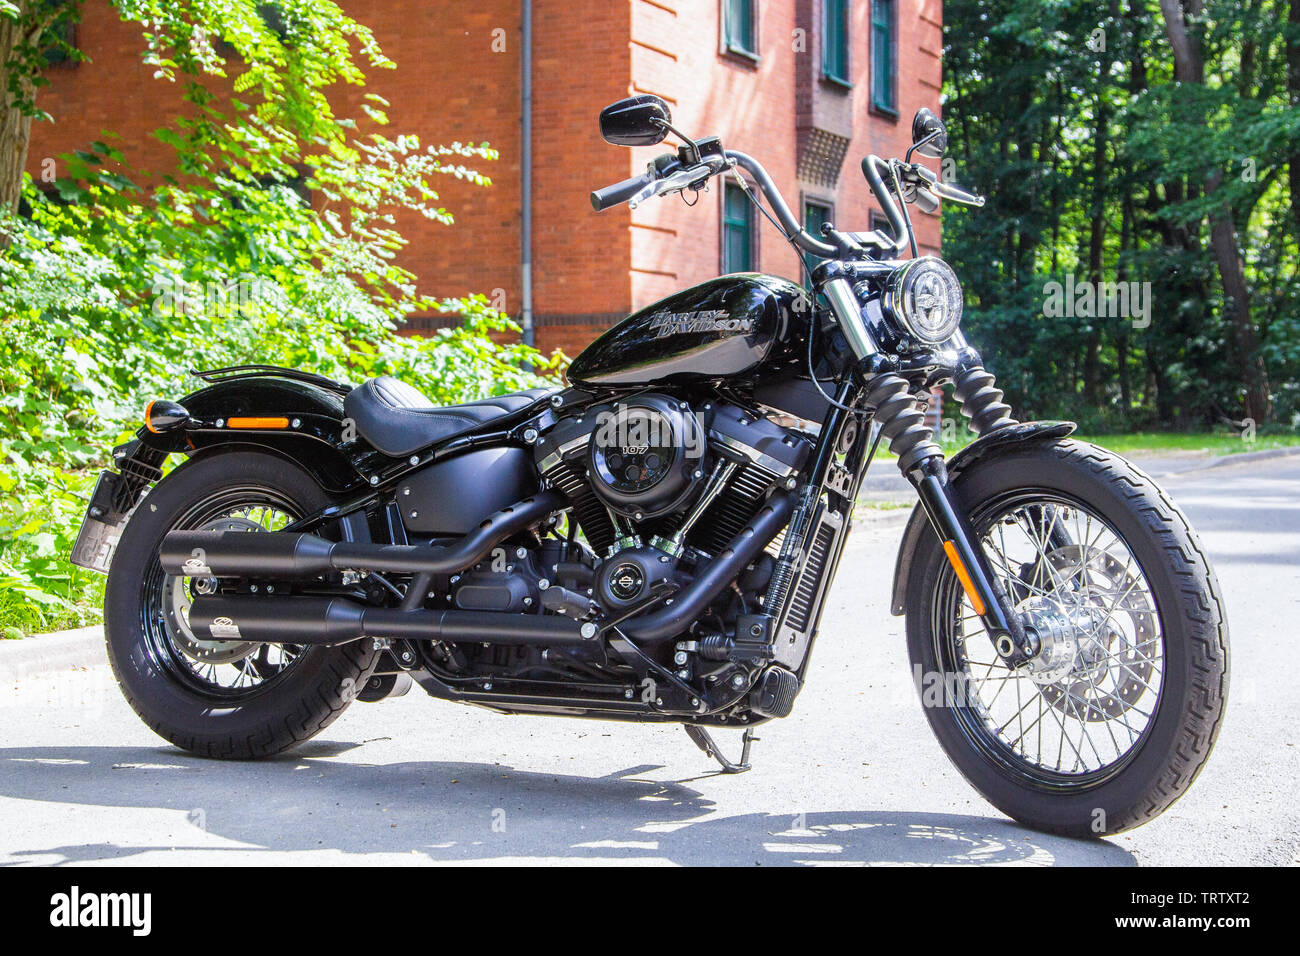 WUNSTORF / ALLEMAGNE - Juin 7,2019 : moto Harley Davidson se trouve sur une rue. Harley Davidson est un fabricant de motos américain fondé en 19 Banque D'Images